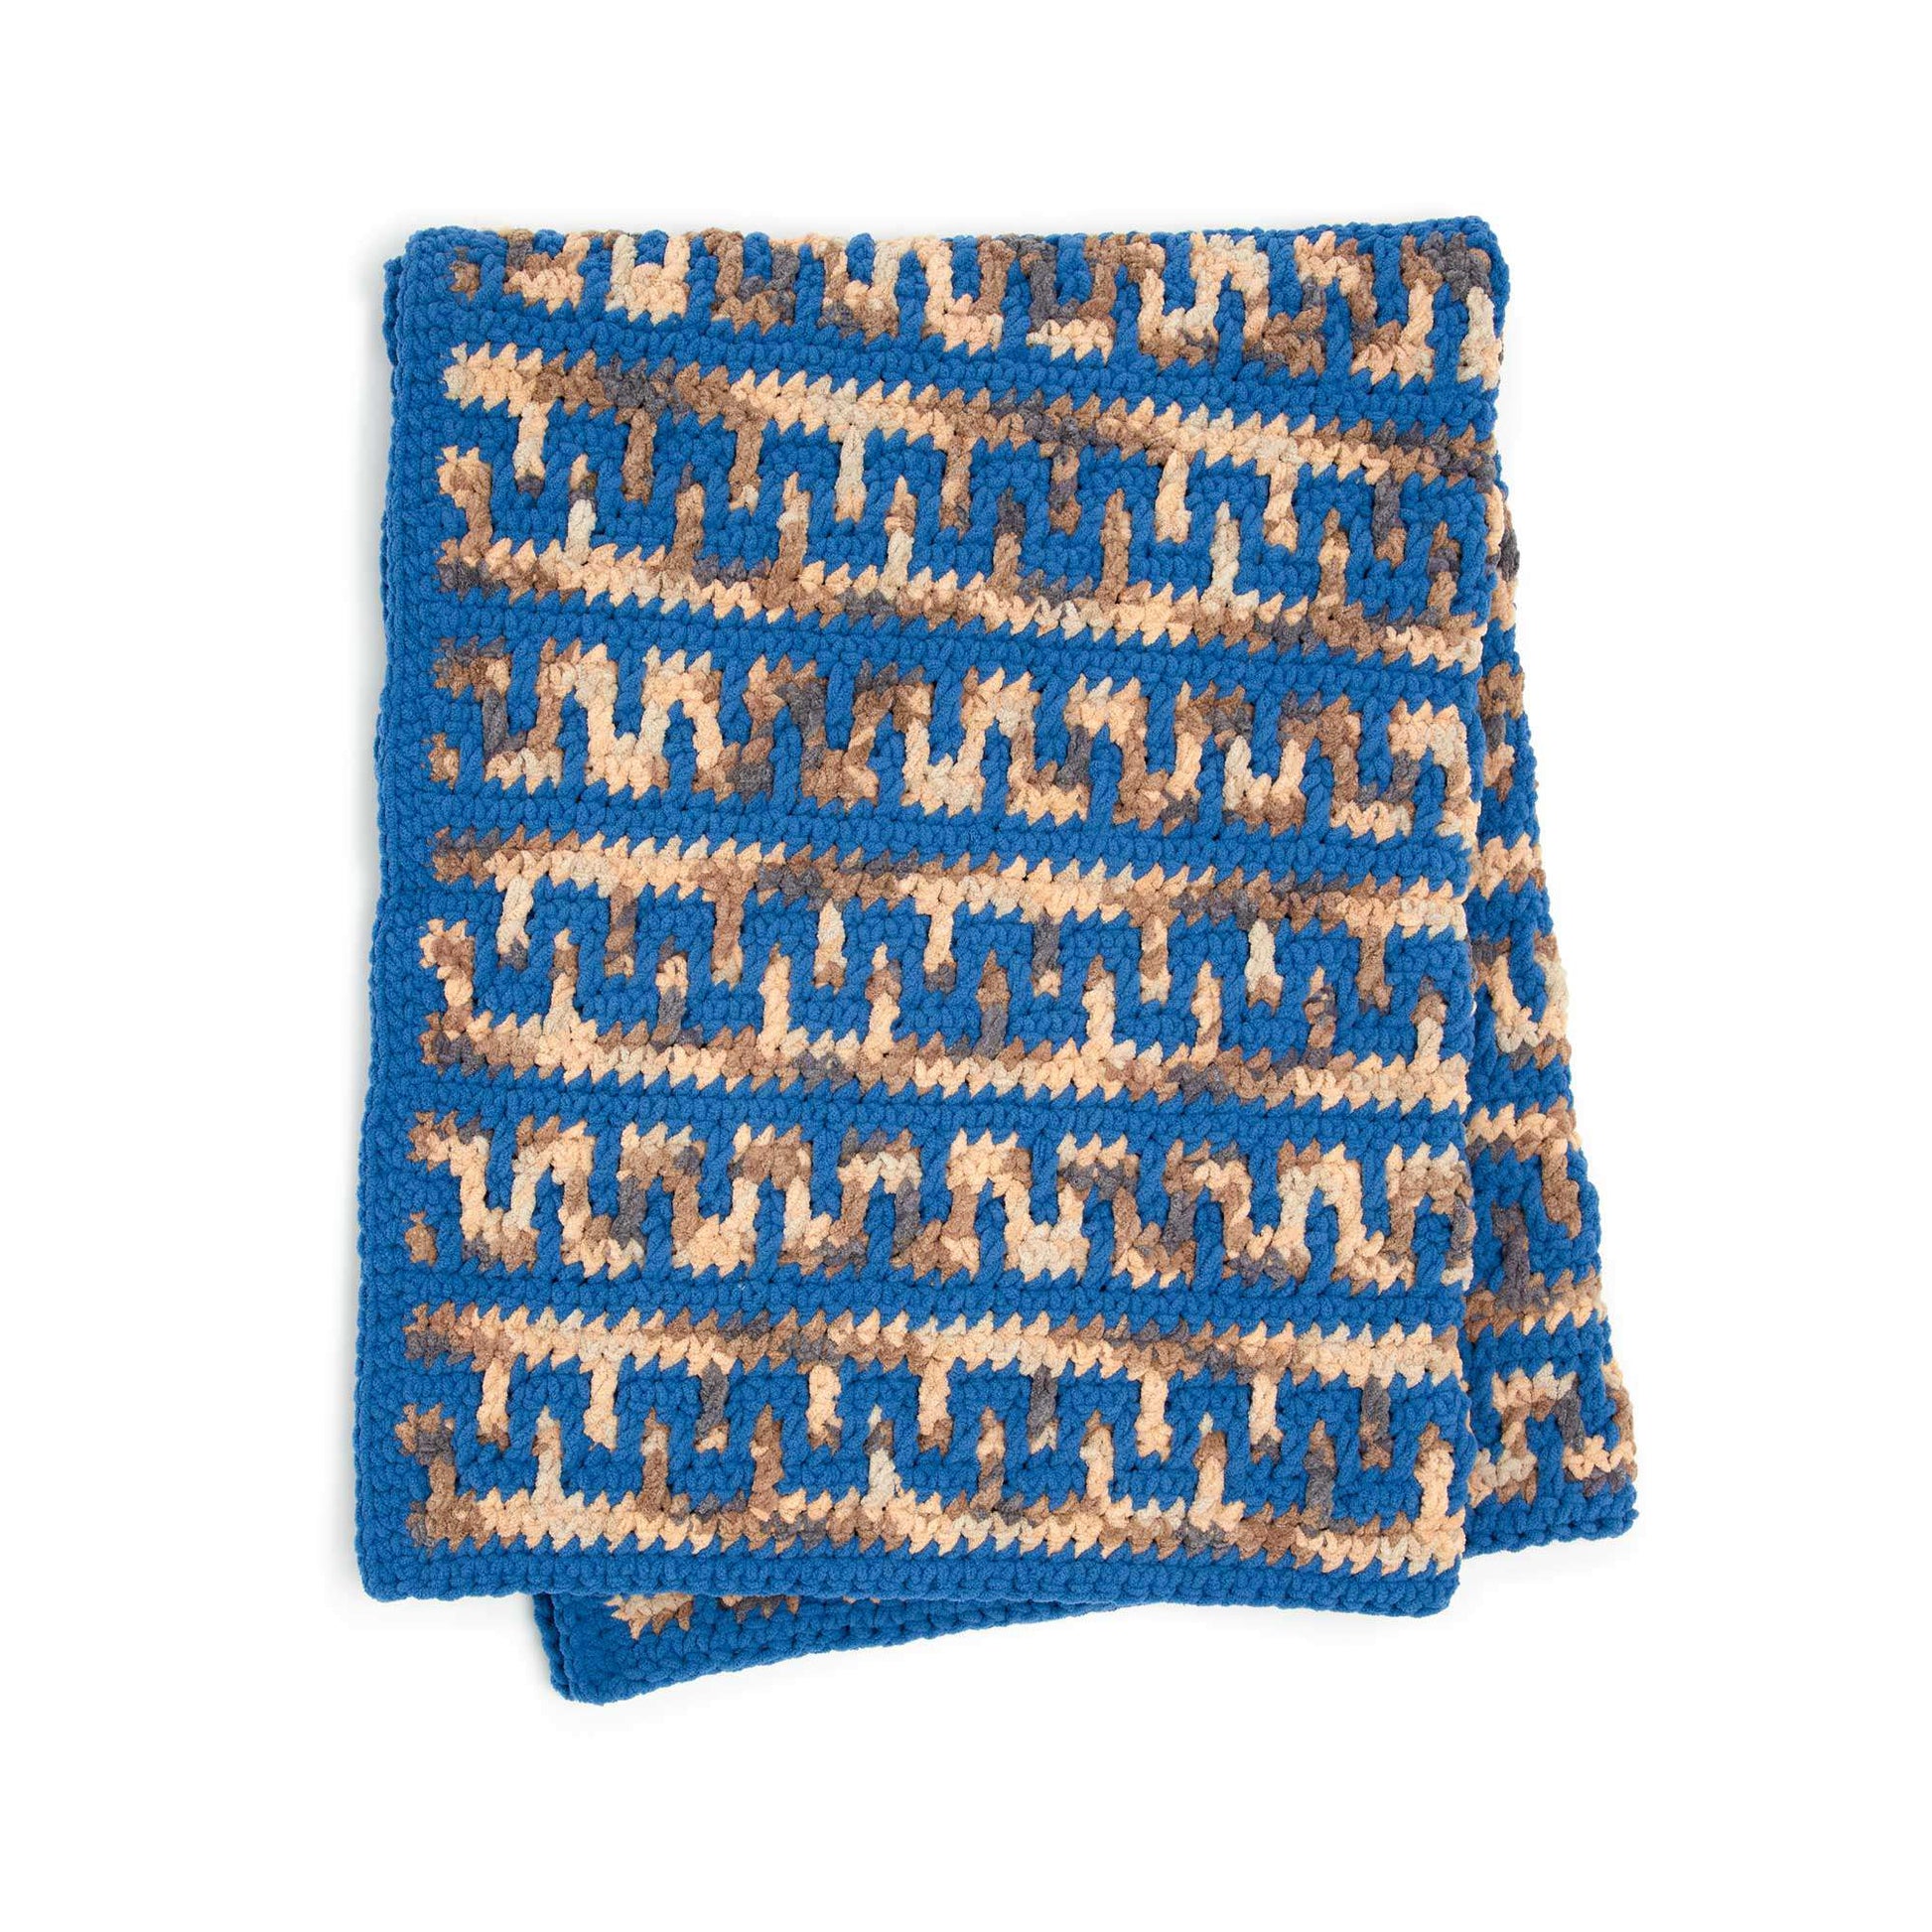 Free Bernat Greek Key Mosaic Crochet Blanket Pattern